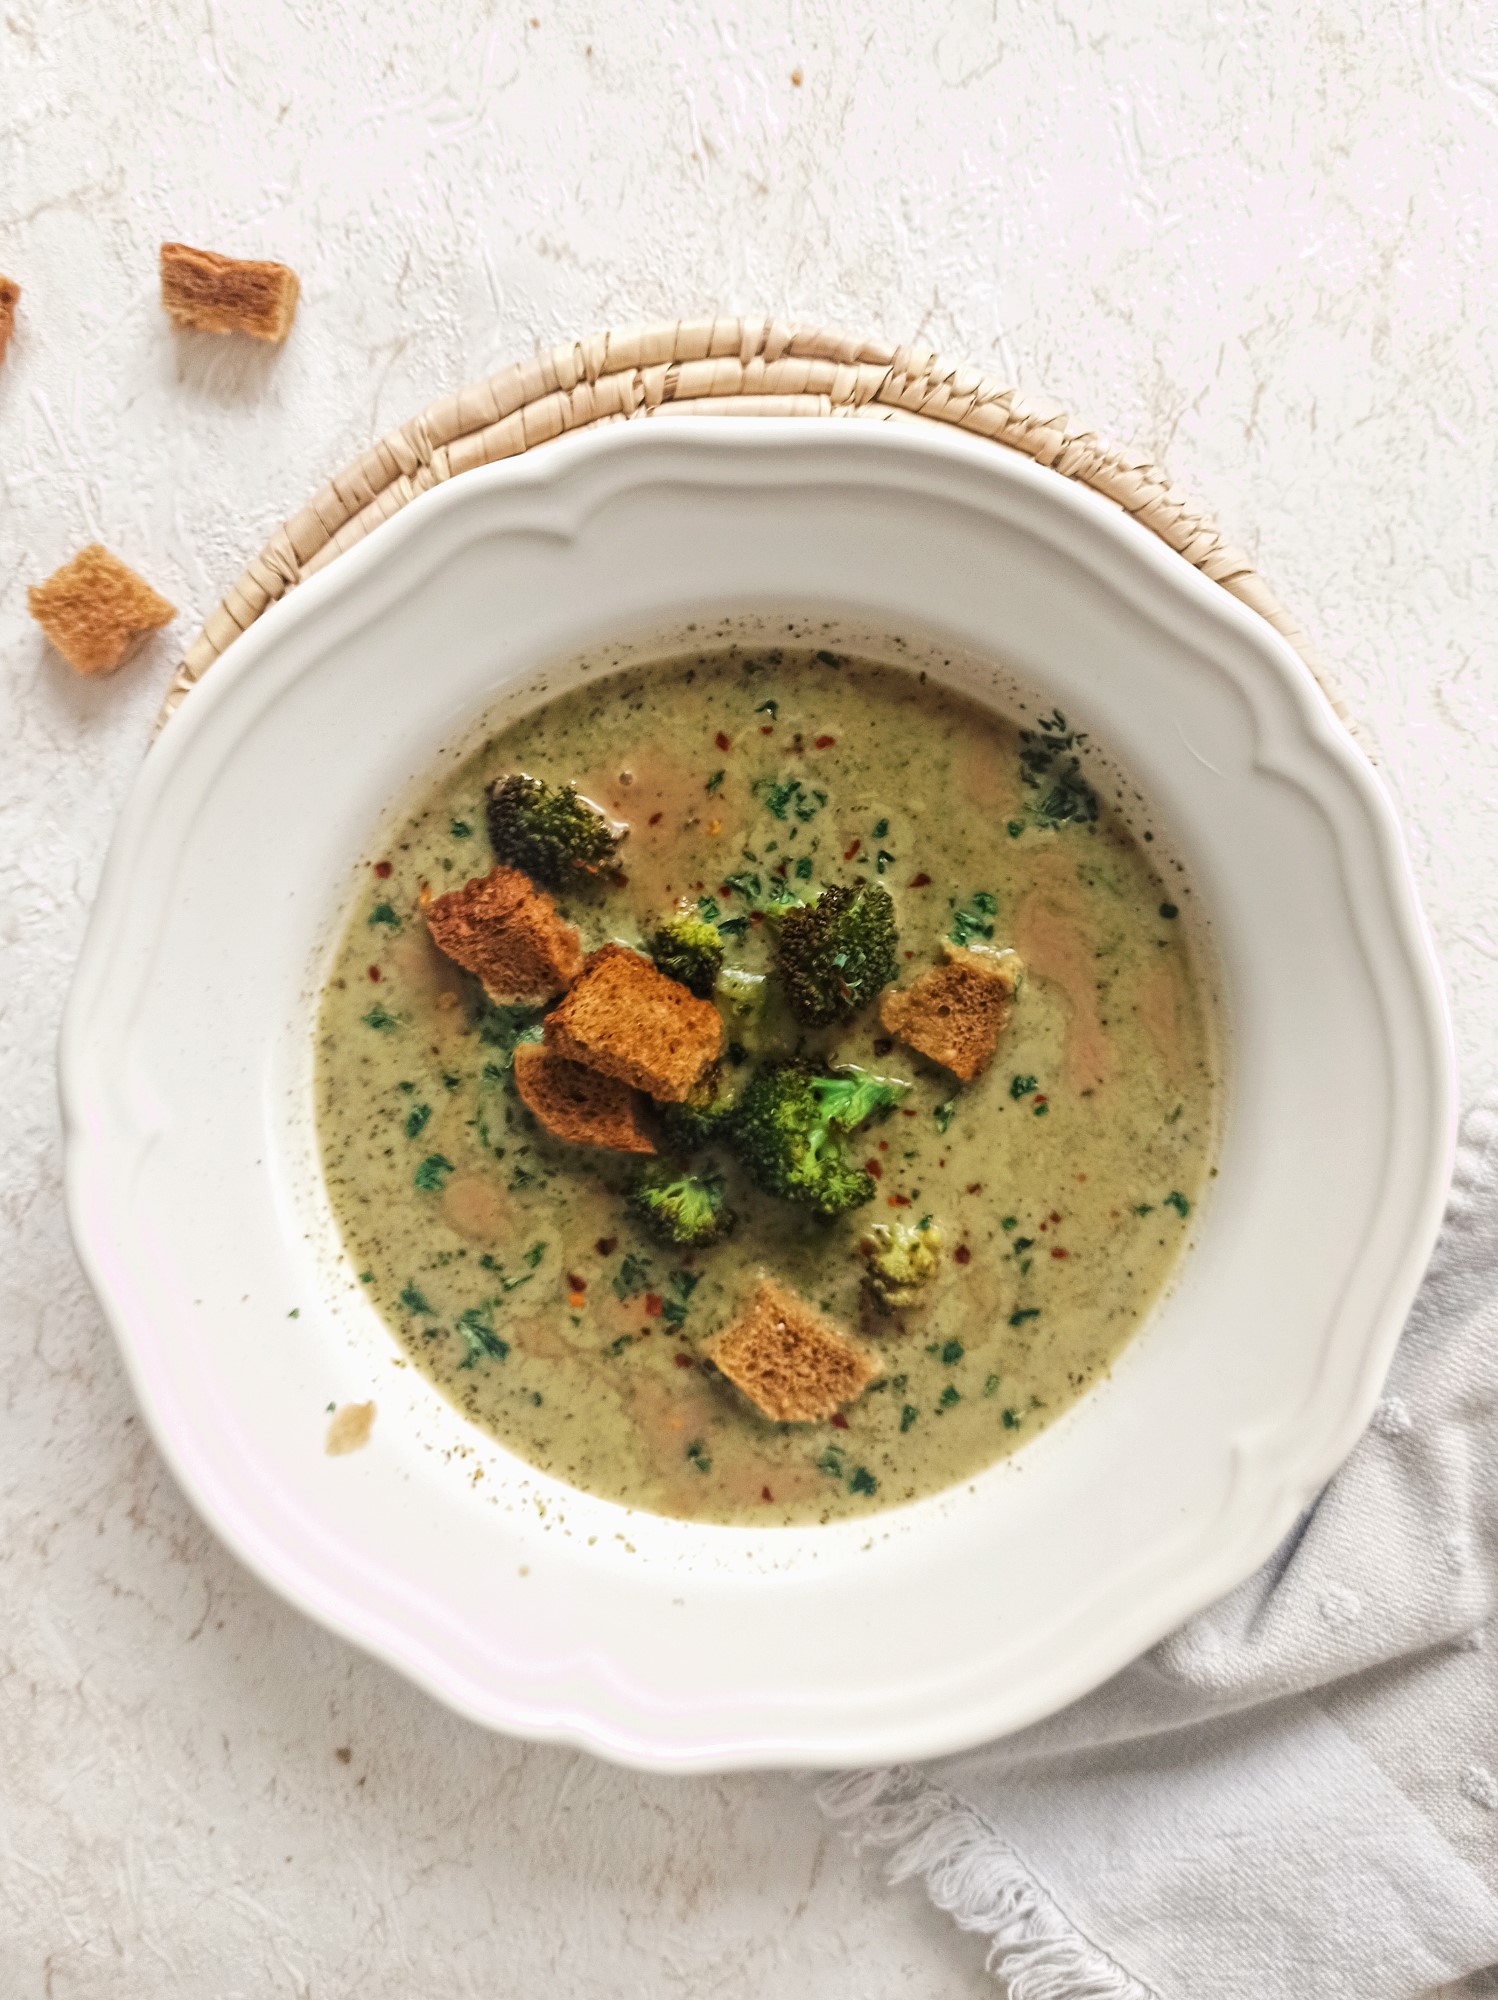 Creamy broccoli soup with tahini, lemon and garlic.